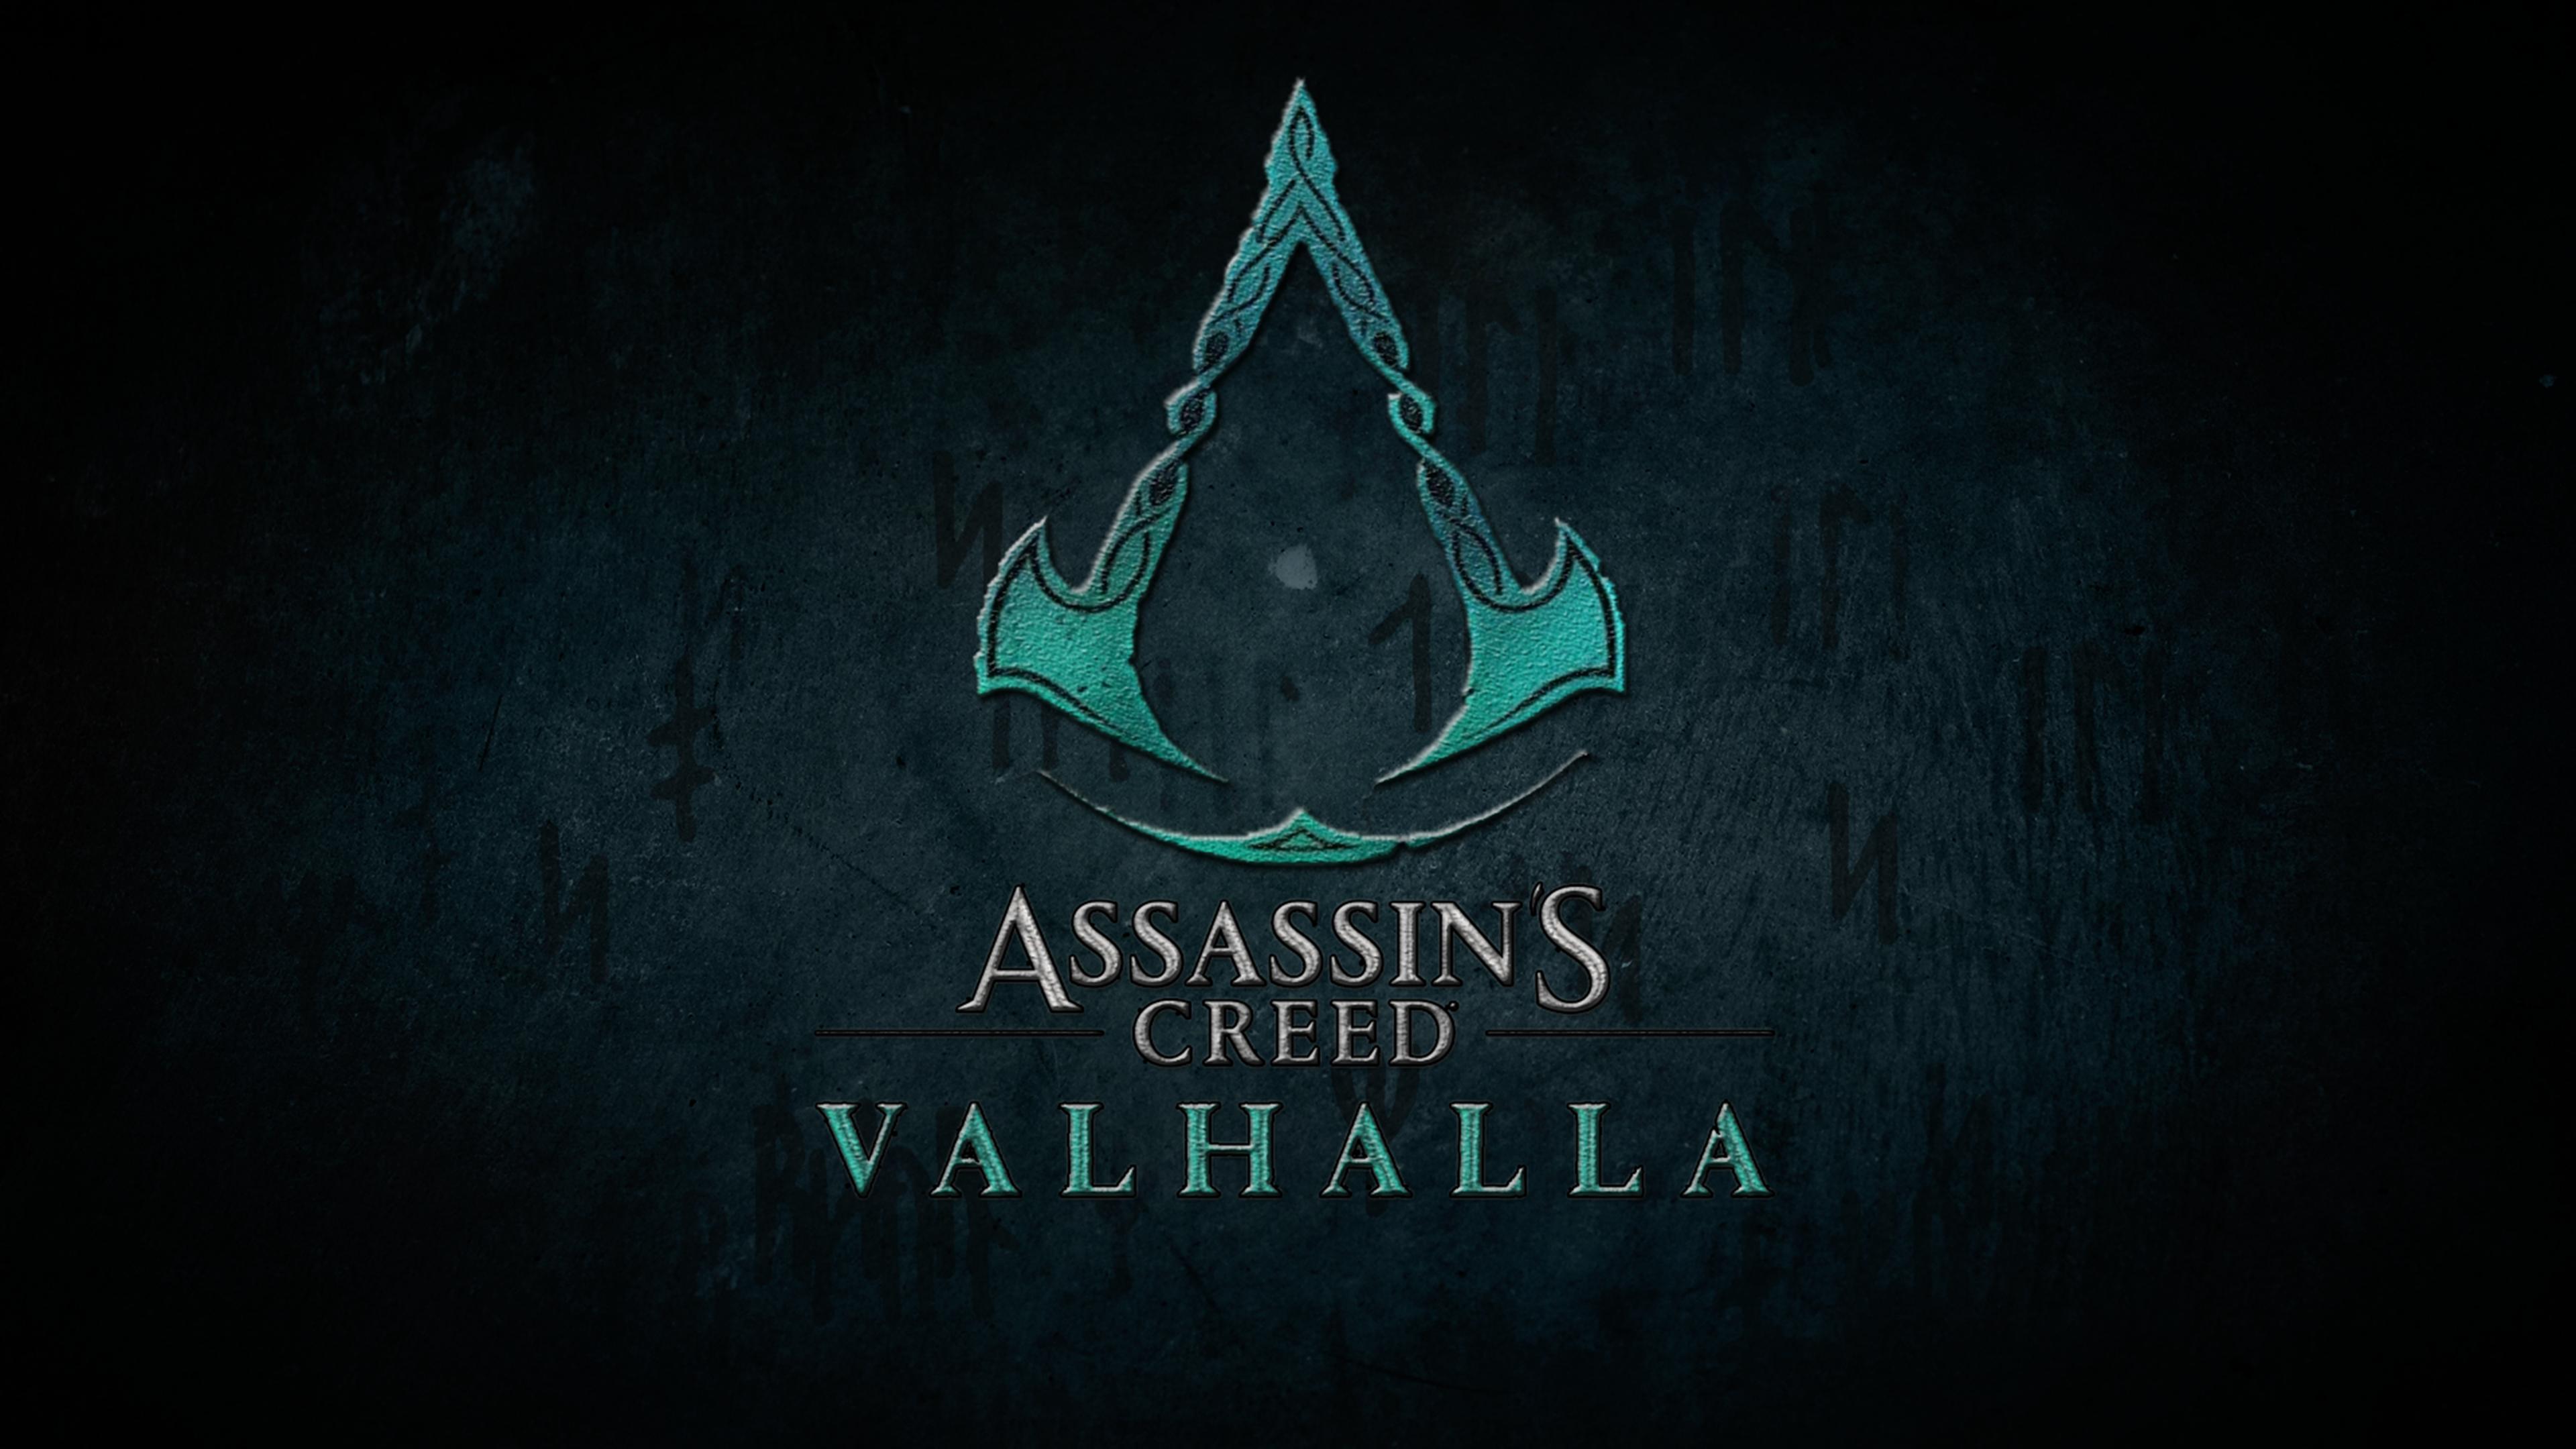 Assassin's Creed Valhalla Wallpaper (4K)